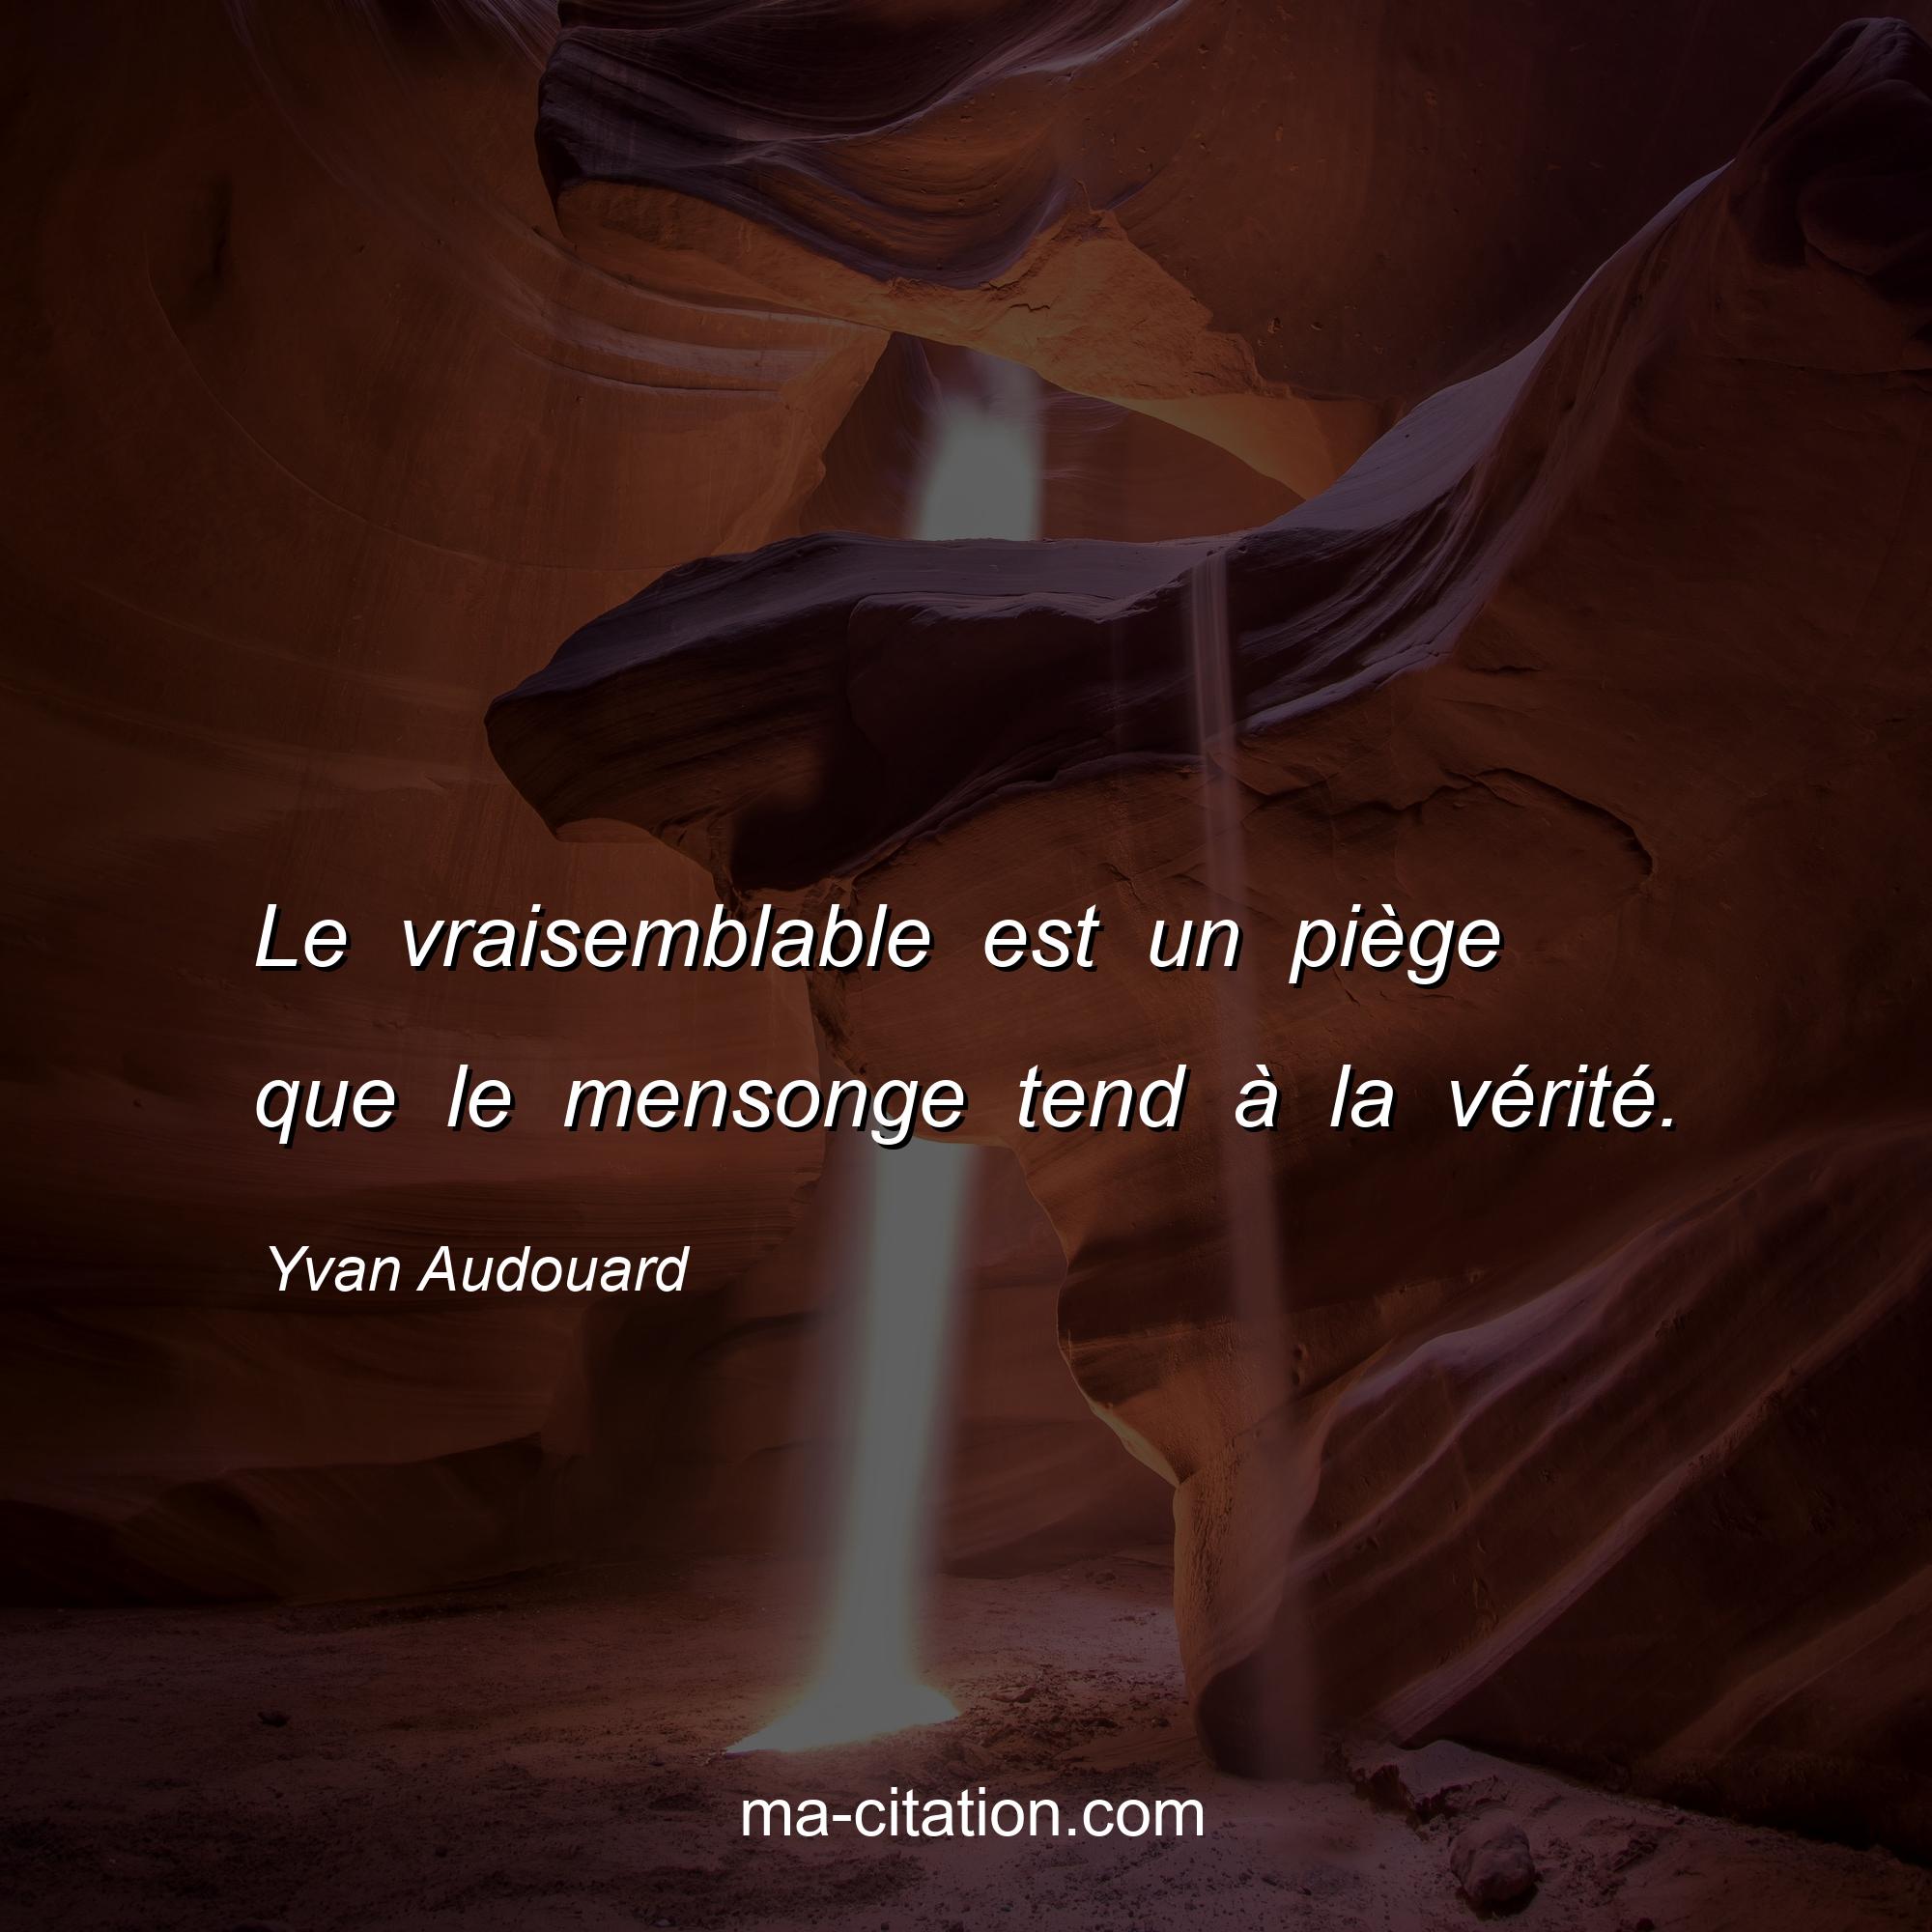 Yvan Audouard : Le vraisemblable est un piège que le mensonge tend à la vérité.